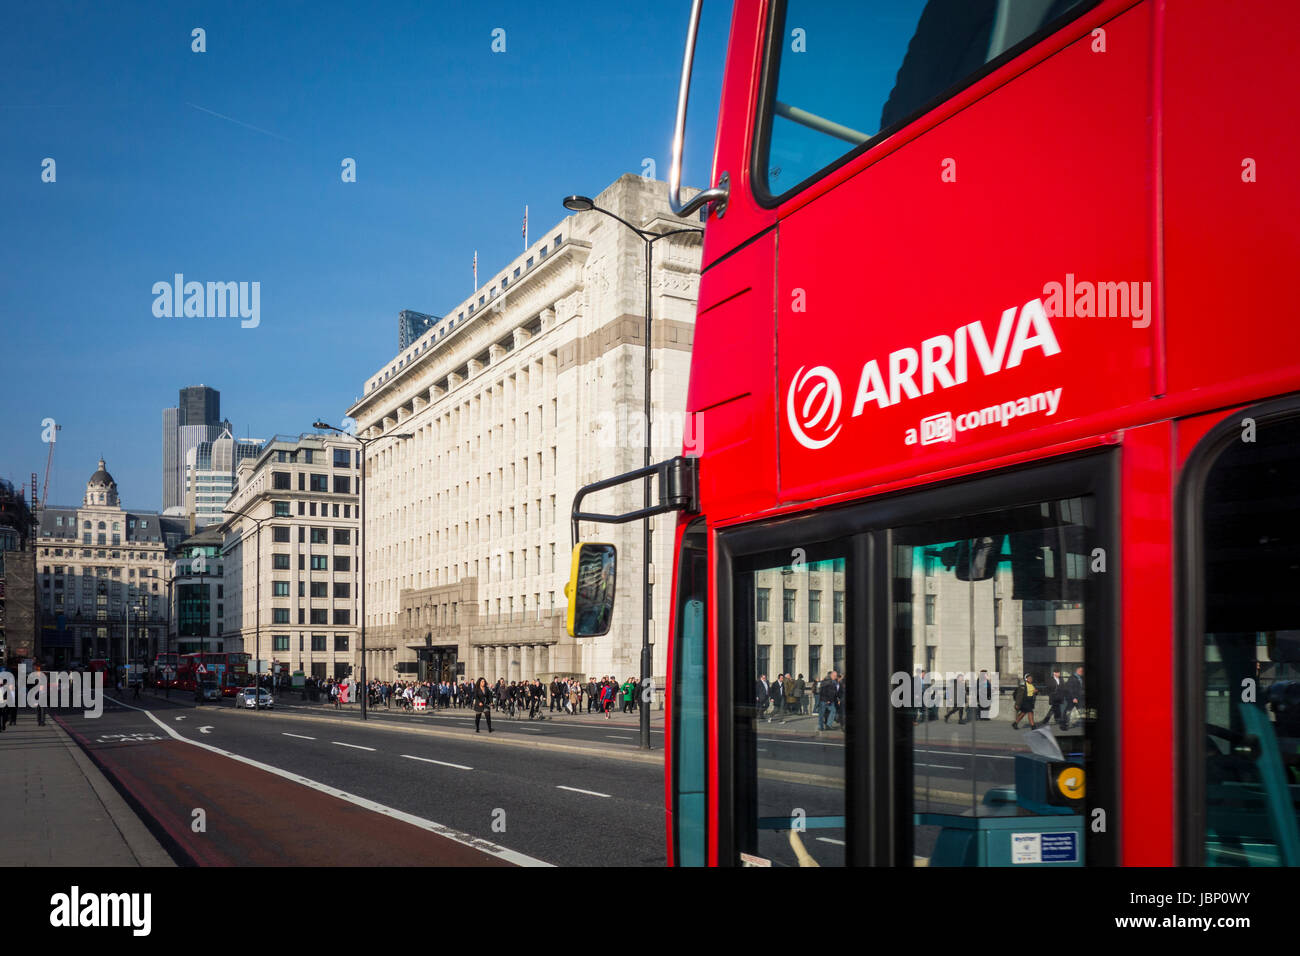 London bus rouge arriva sur le pont de Londres, UK Banque D'Images